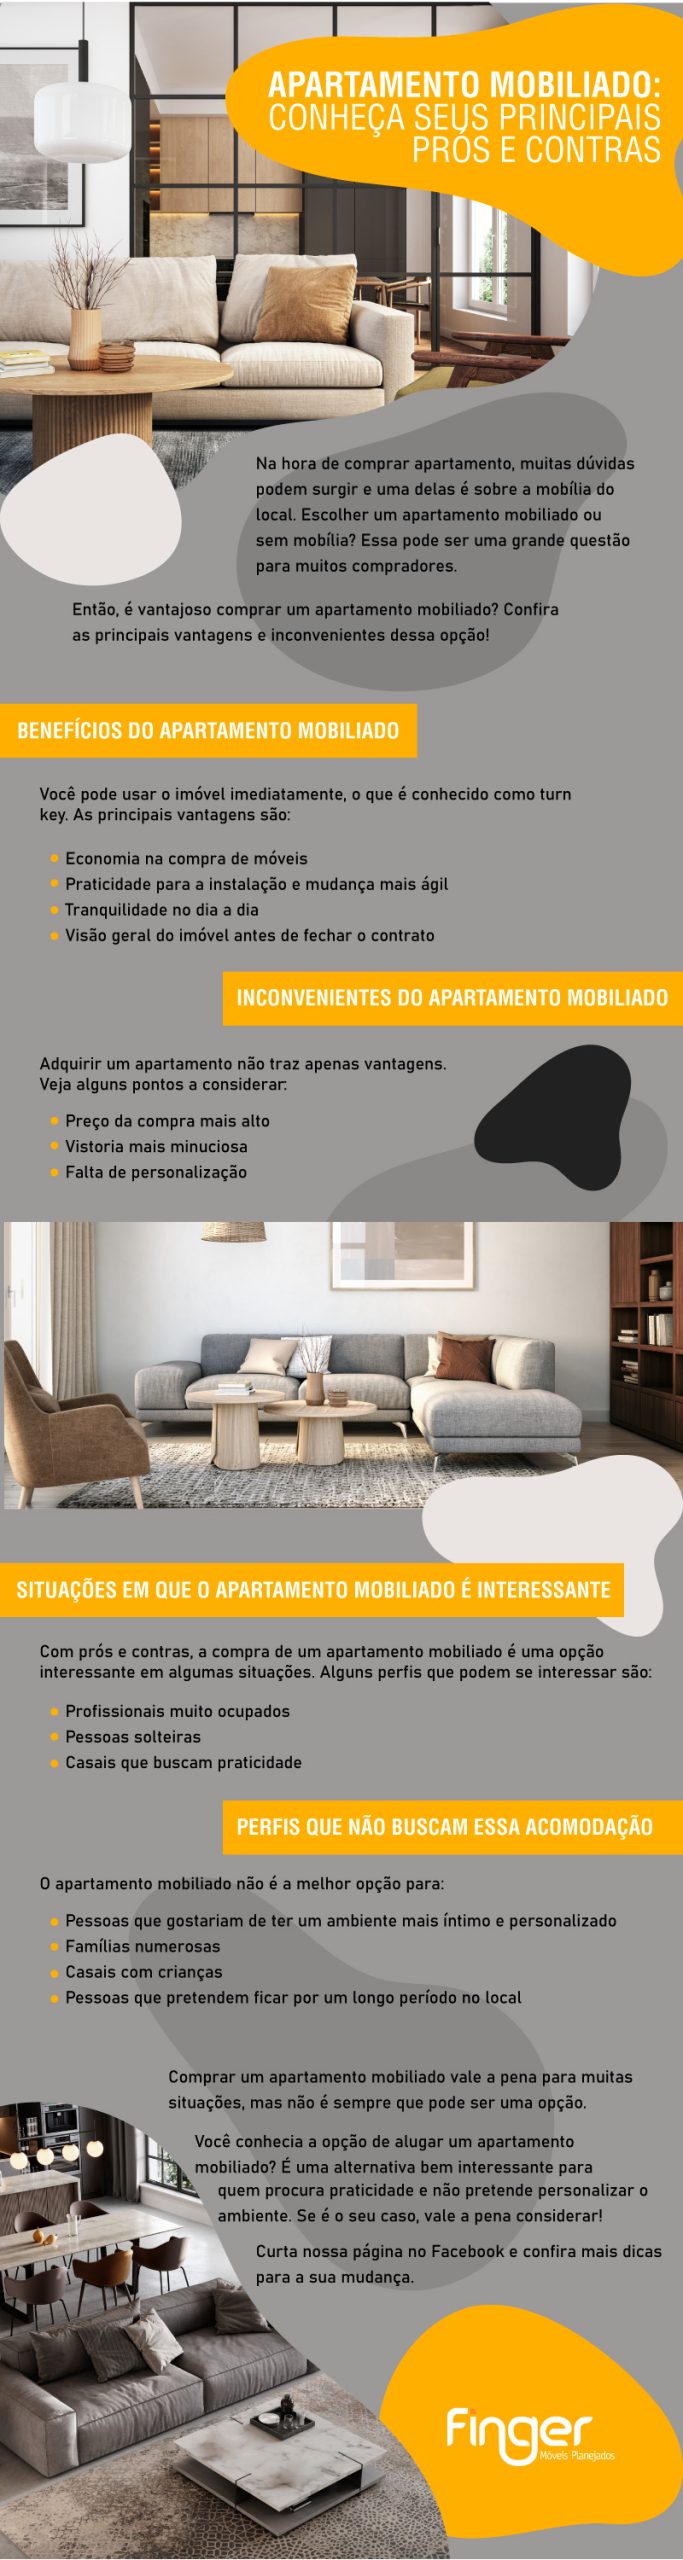 infografico apartamento mobiliado